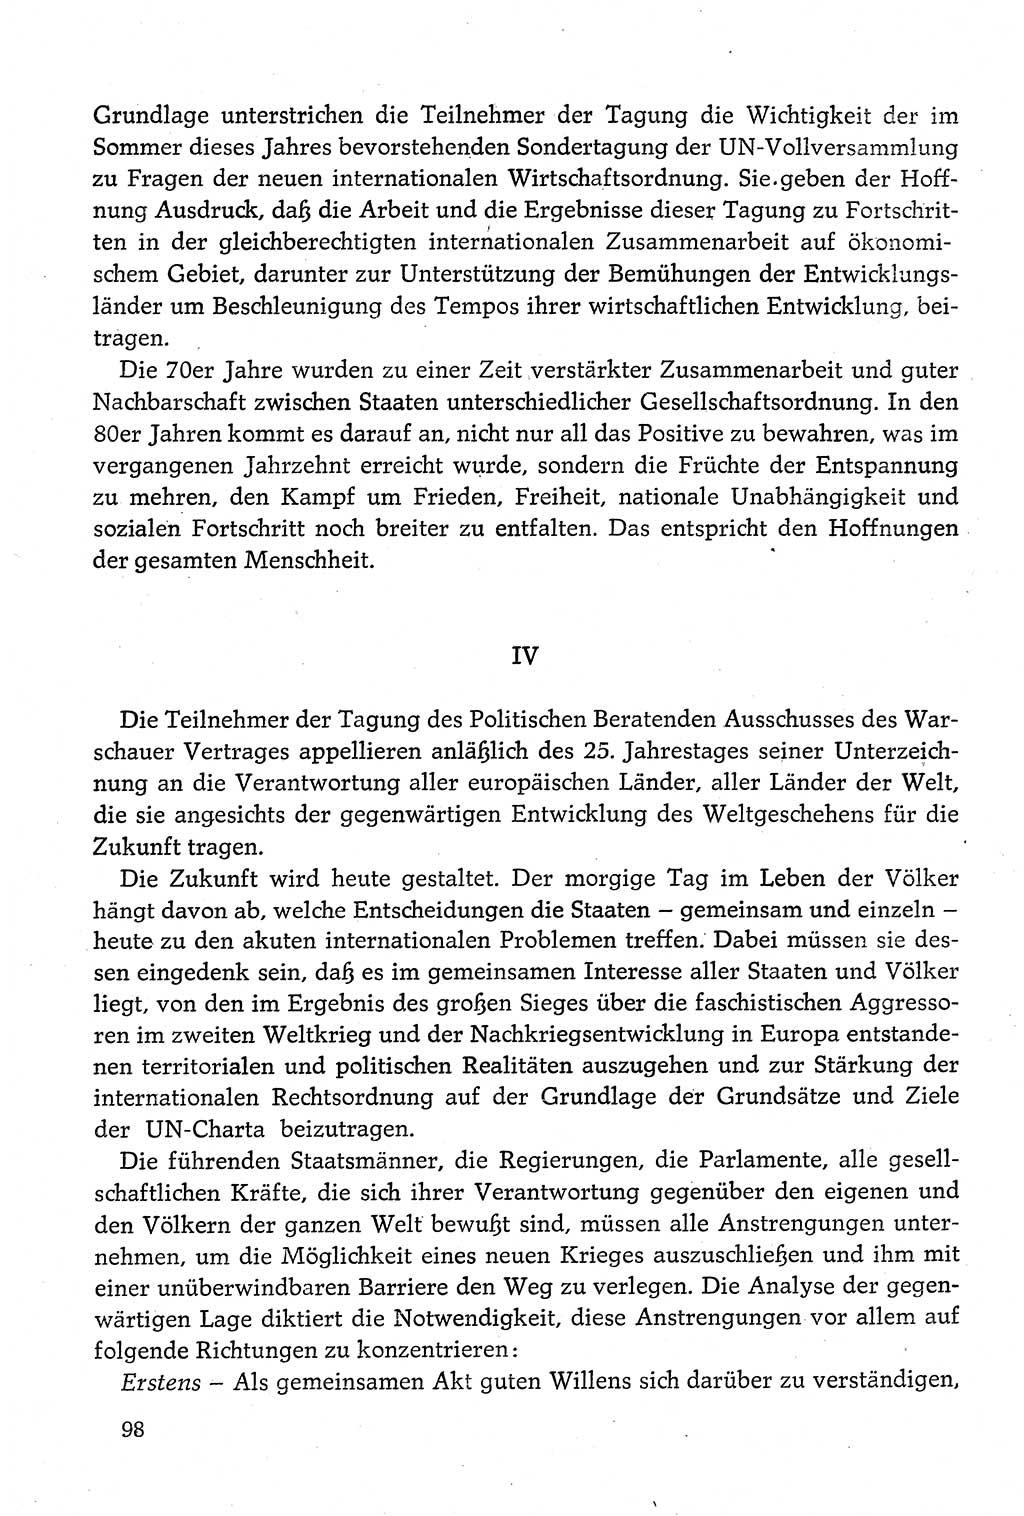 Dokumente der Sozialistischen Einheitspartei Deutschlands (SED) [Deutsche Demokratische Republik (DDR)] 1980-1981, Seite 98 (Dok. SED DDR 1980-1981, S. 98)